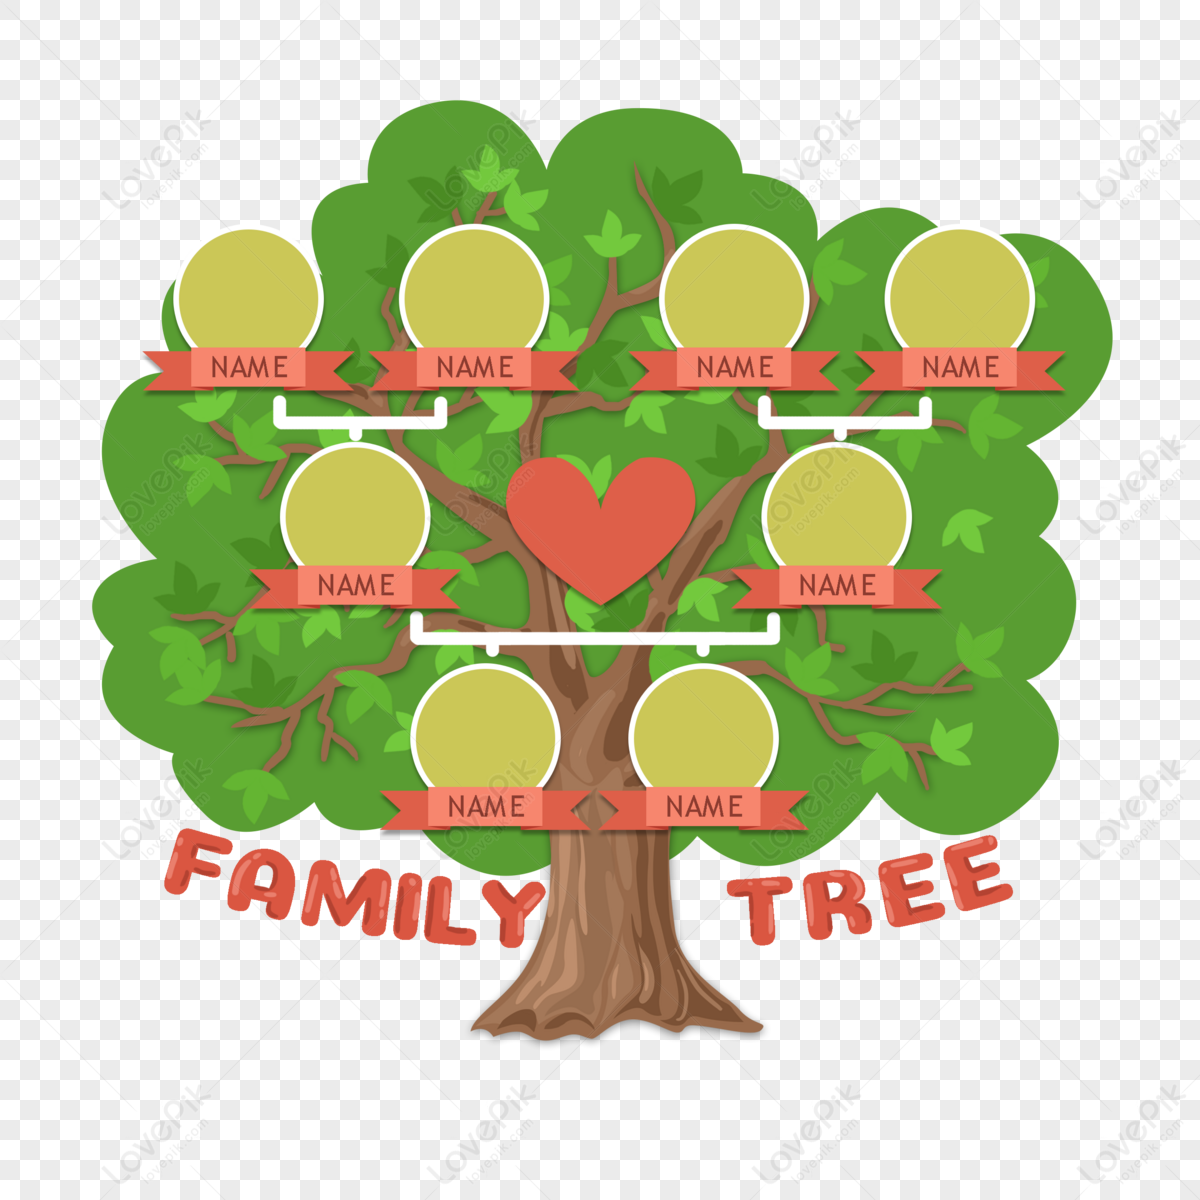 Генеалогическое древо - генеалогическое дерево семьи, цены на составление, фото